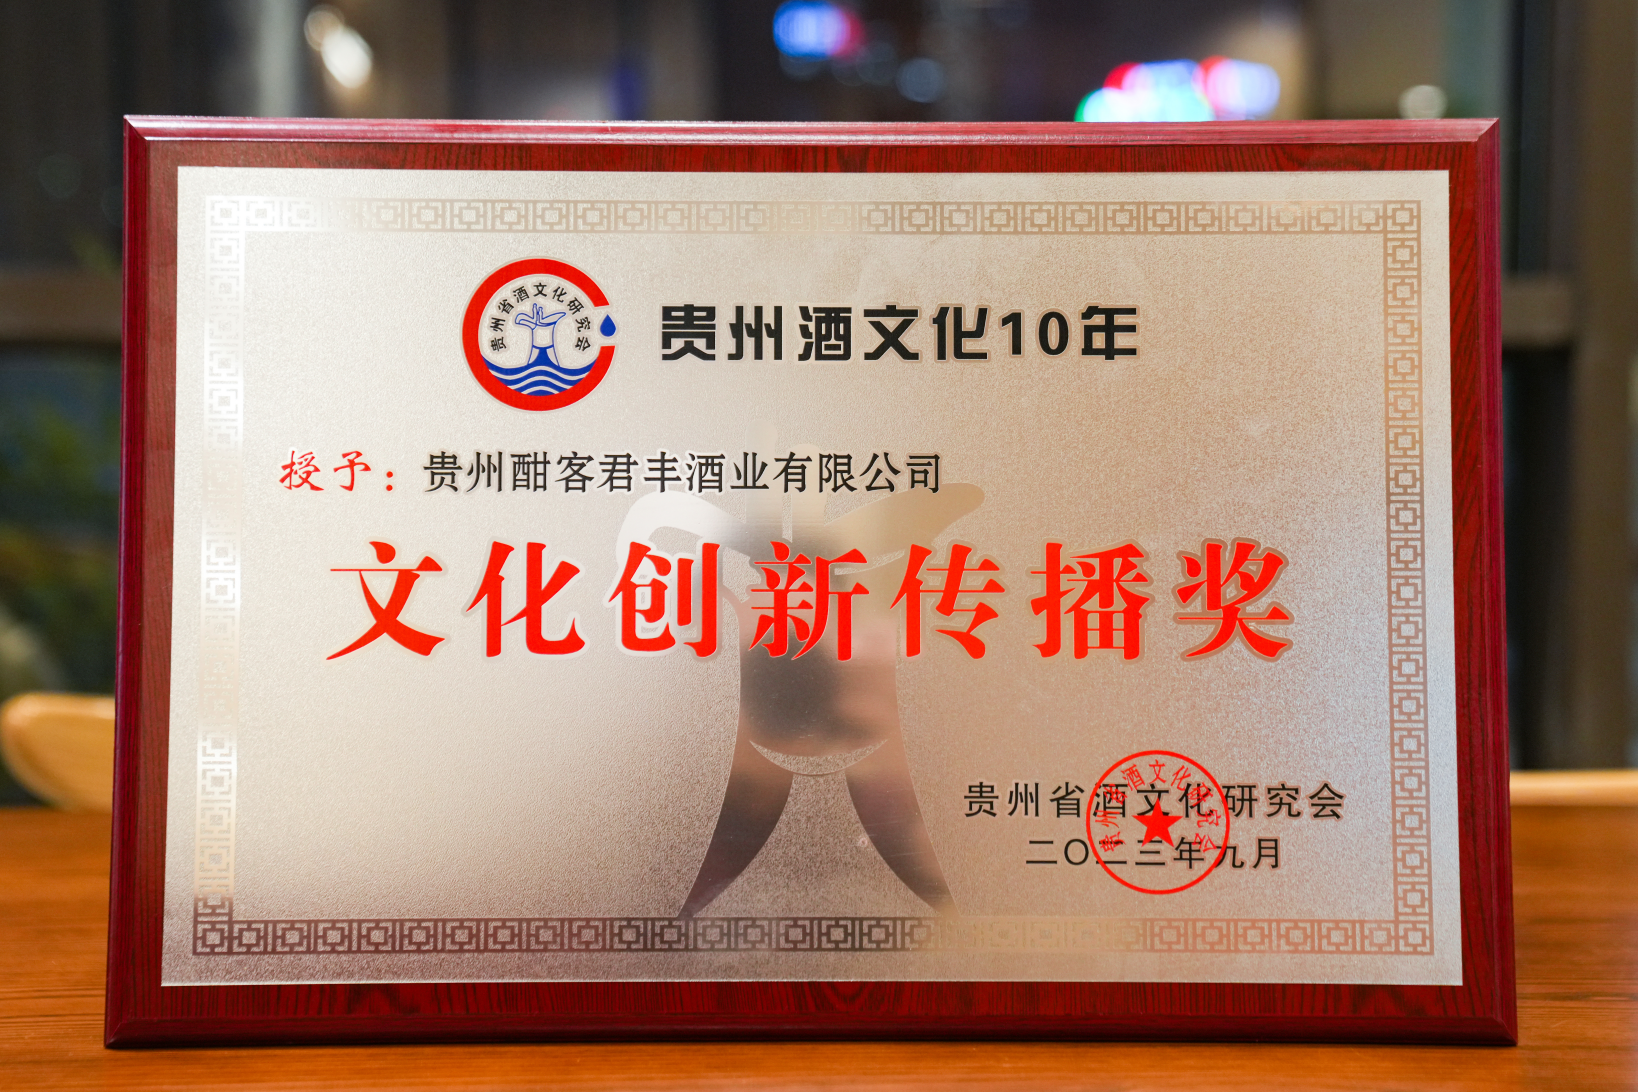 中国酱酒世界行”获行业协会授予“文化创新传播奖”荣誉